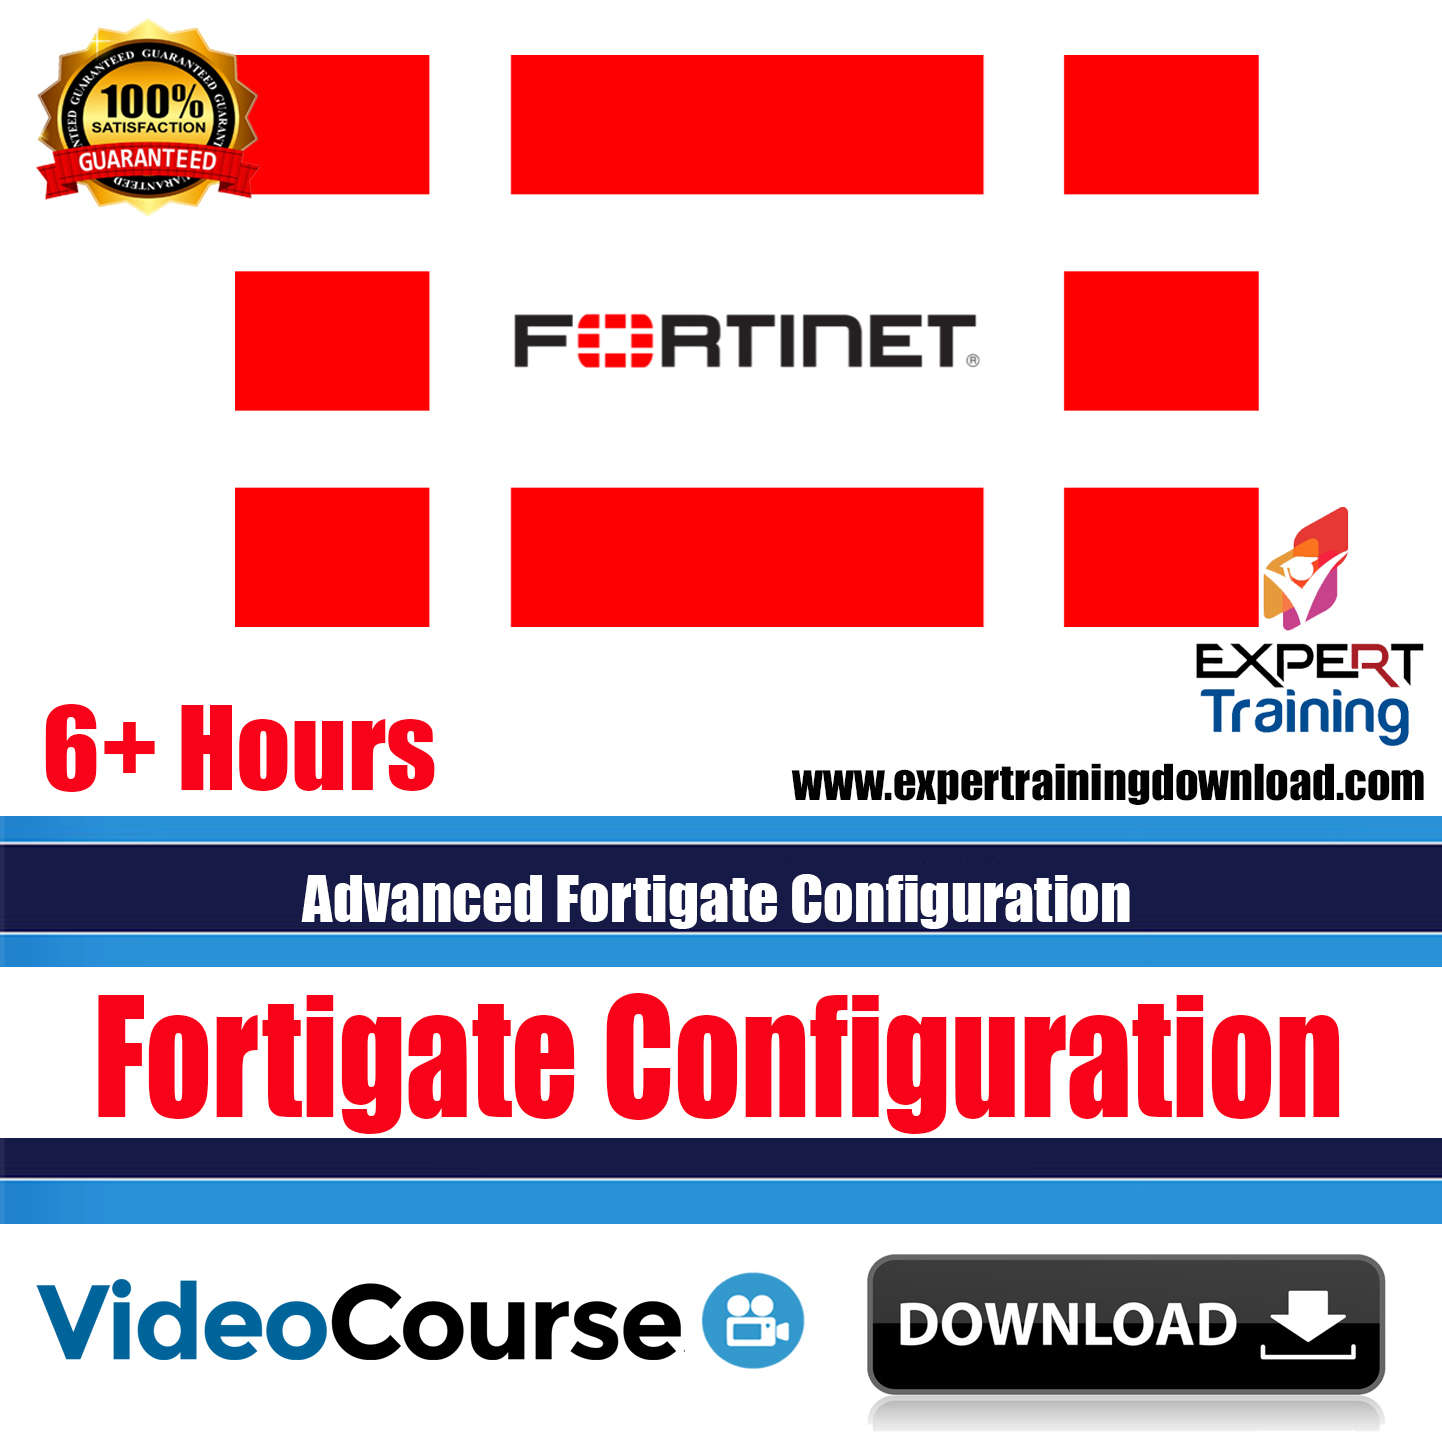 Advanced Fortigate Configuration